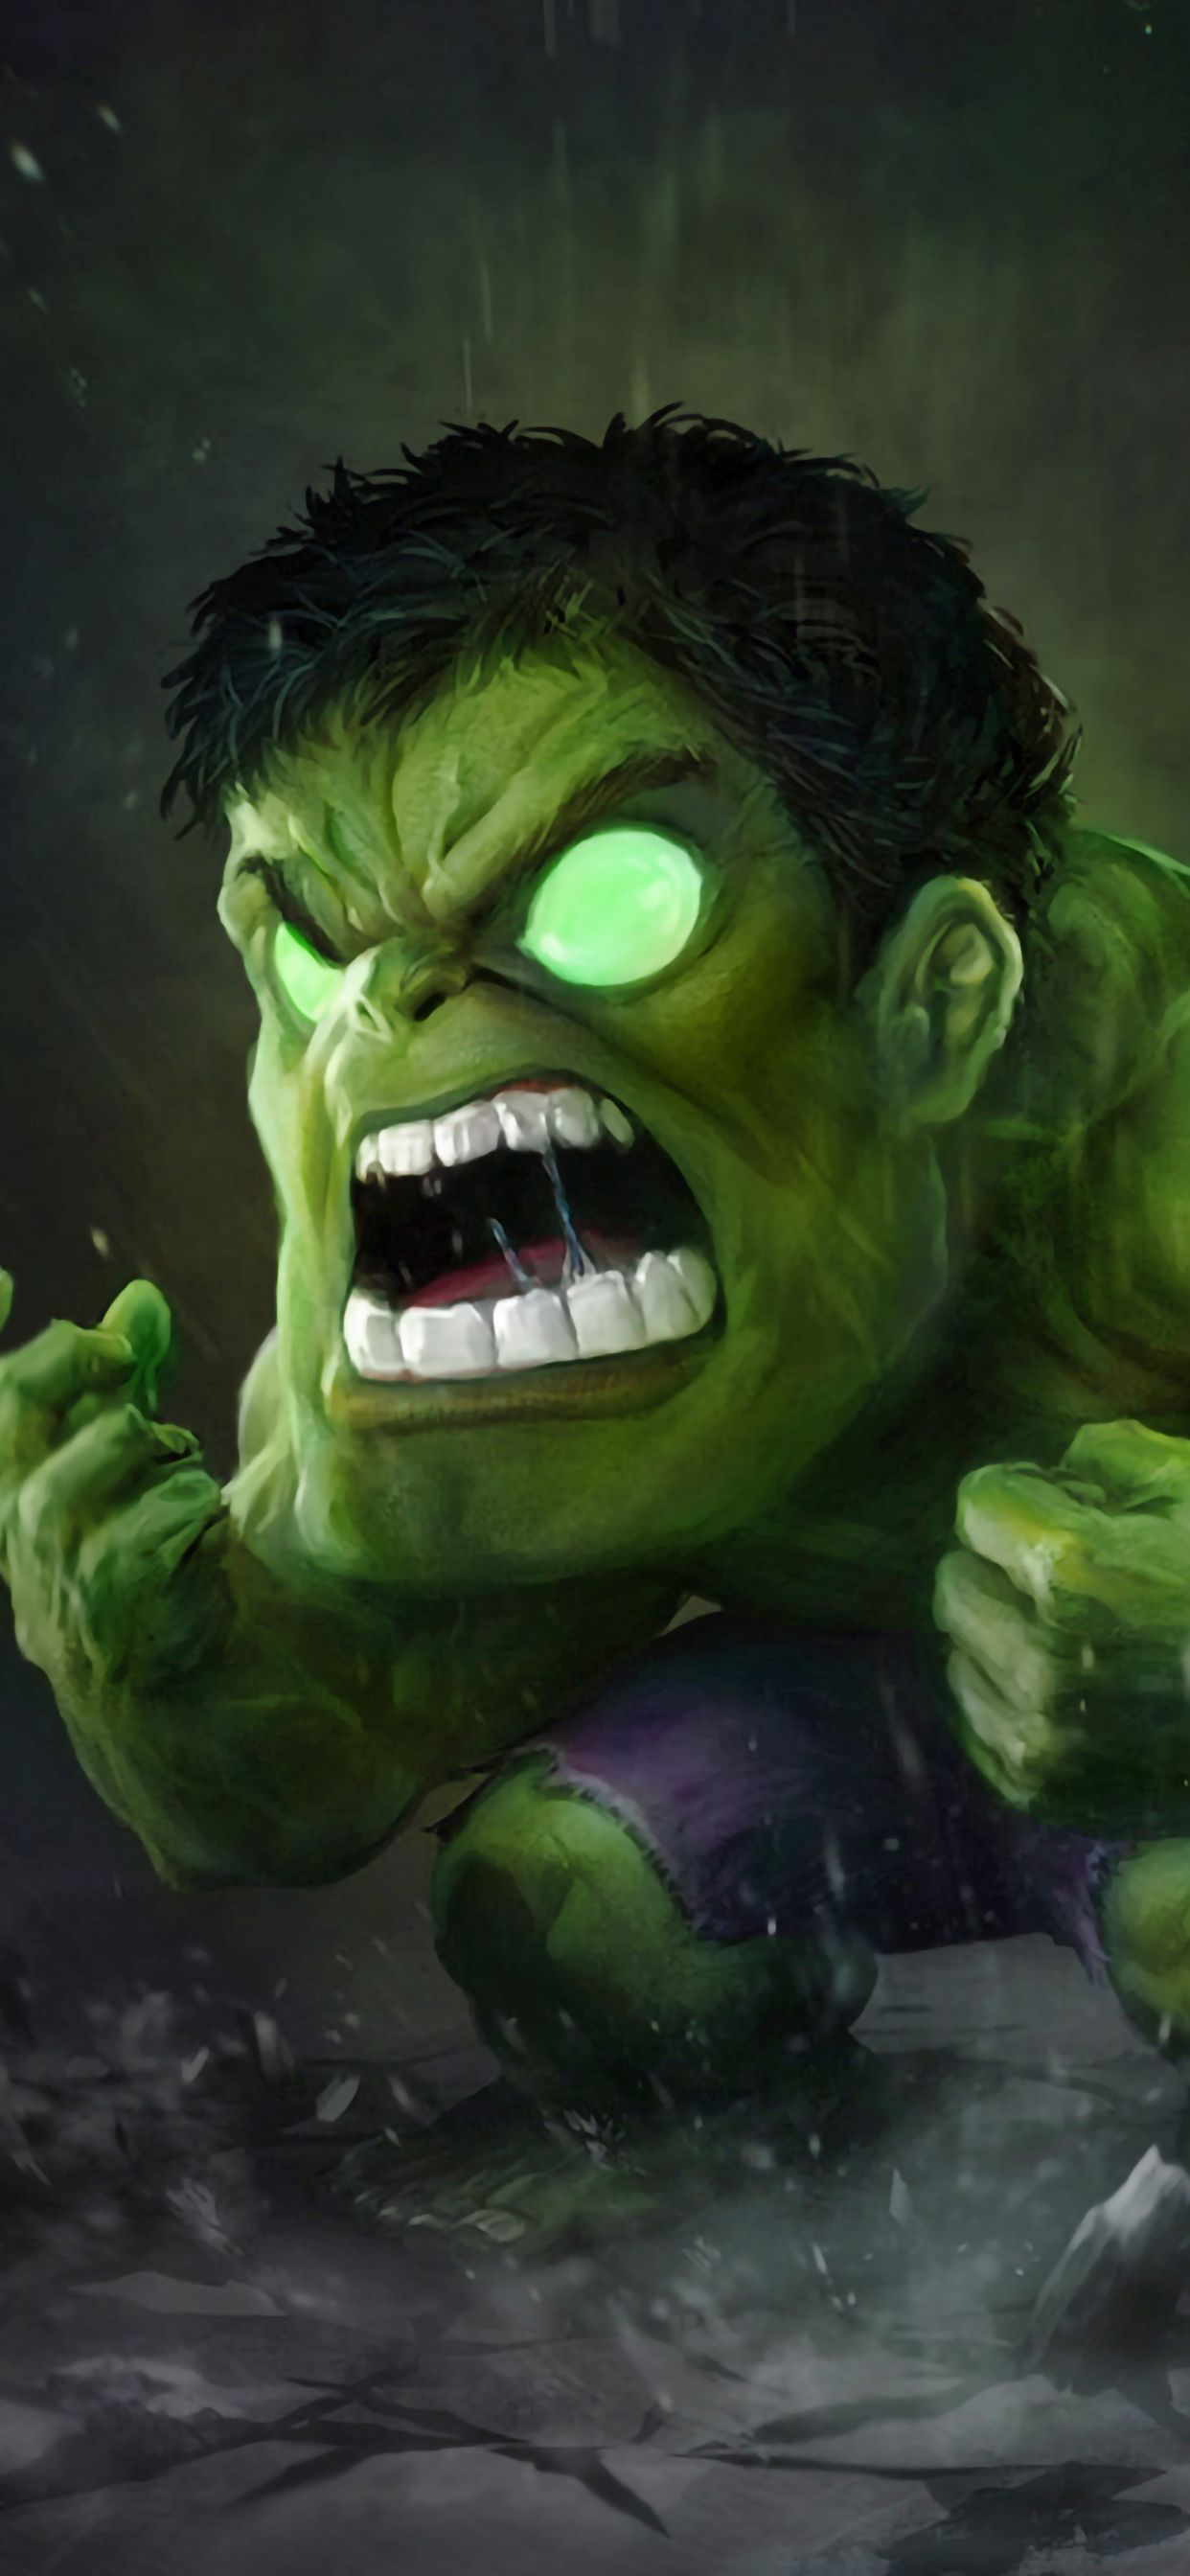 Small Angry Hulk iPhone XS MAX Wallpaper, HD Superheroes